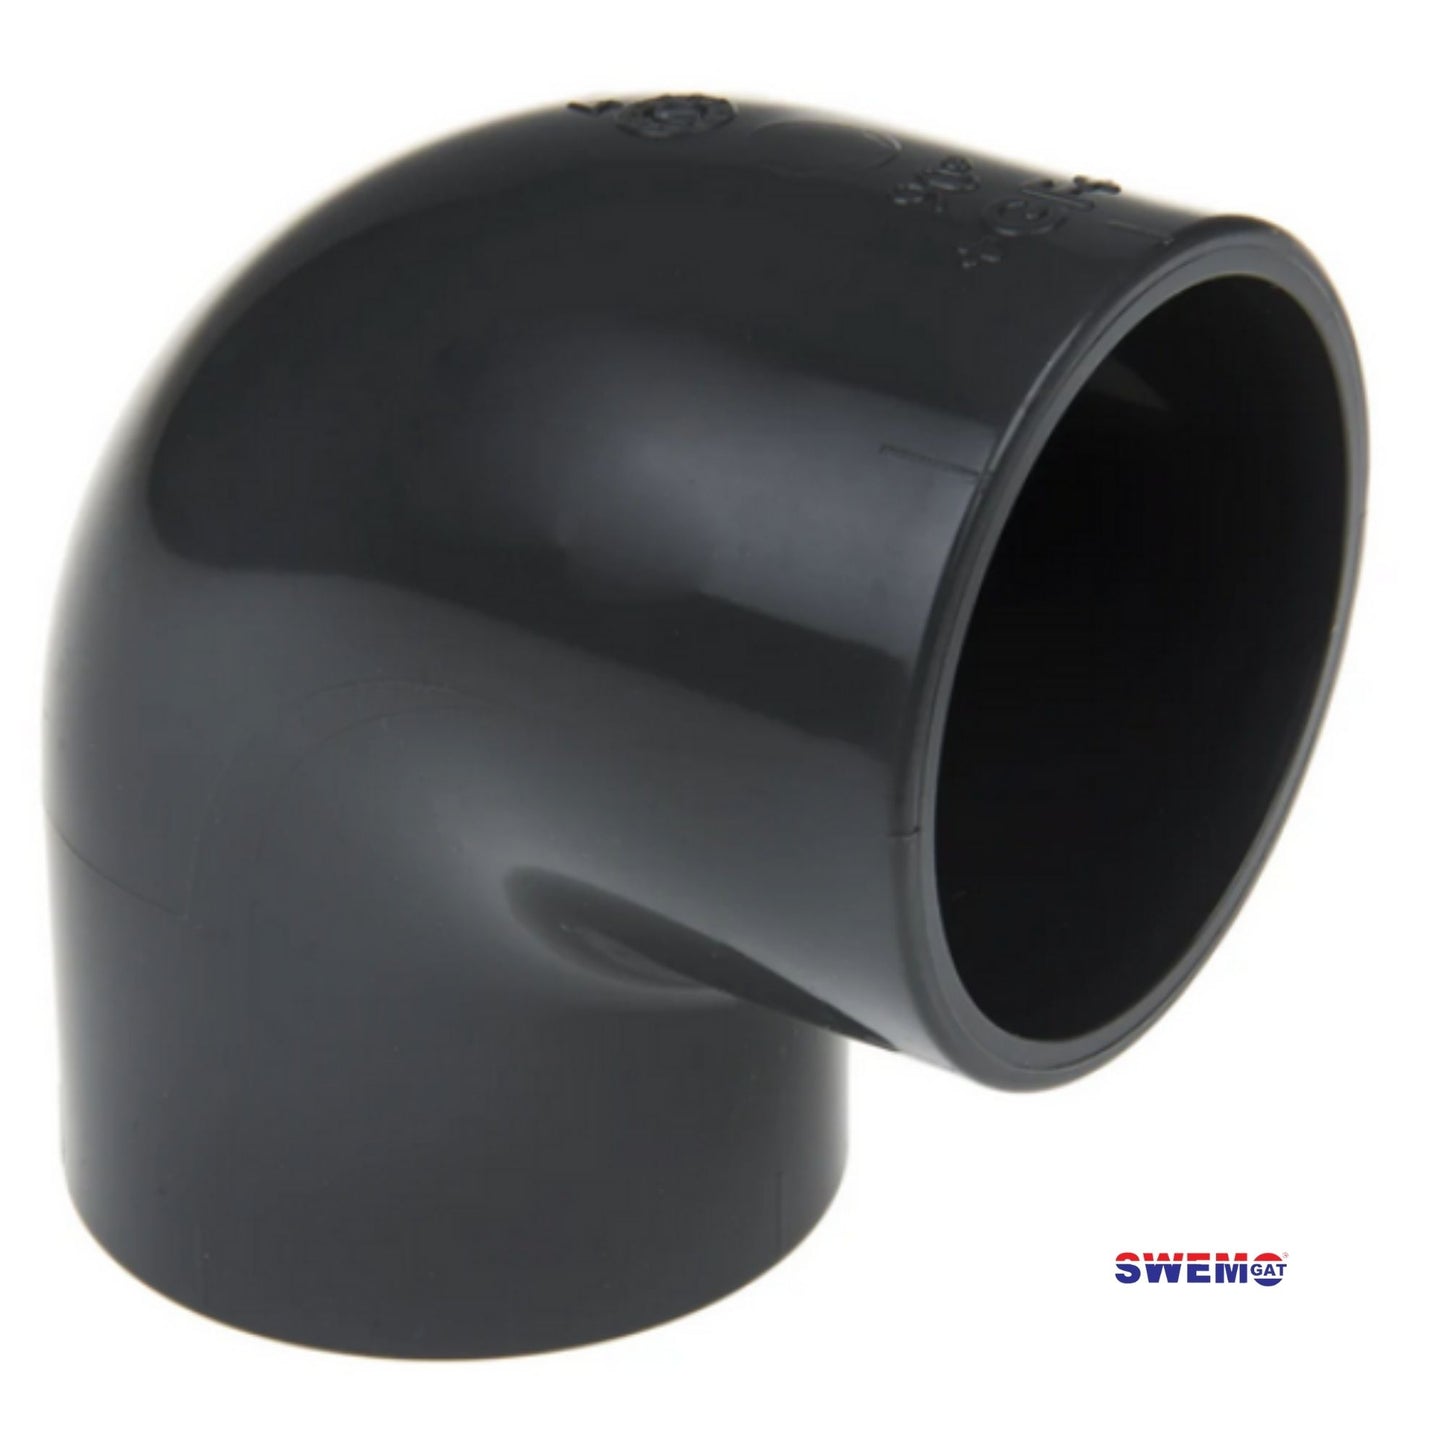 PVC elbow 90 degree 50mm Black